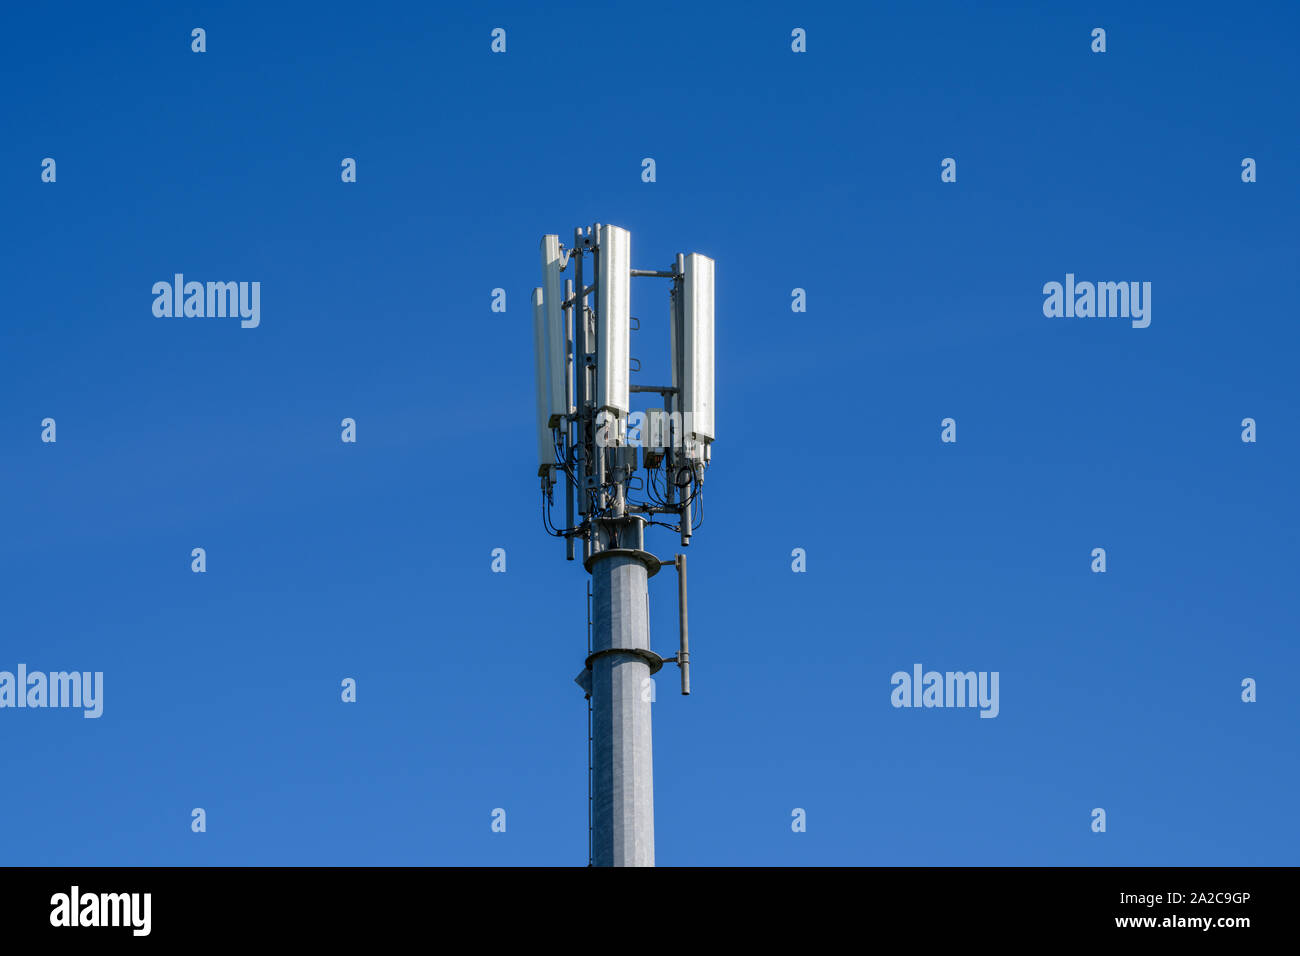 Téléphone mobile et des communications mast photographié contre un ciel bleu Banque D'Images